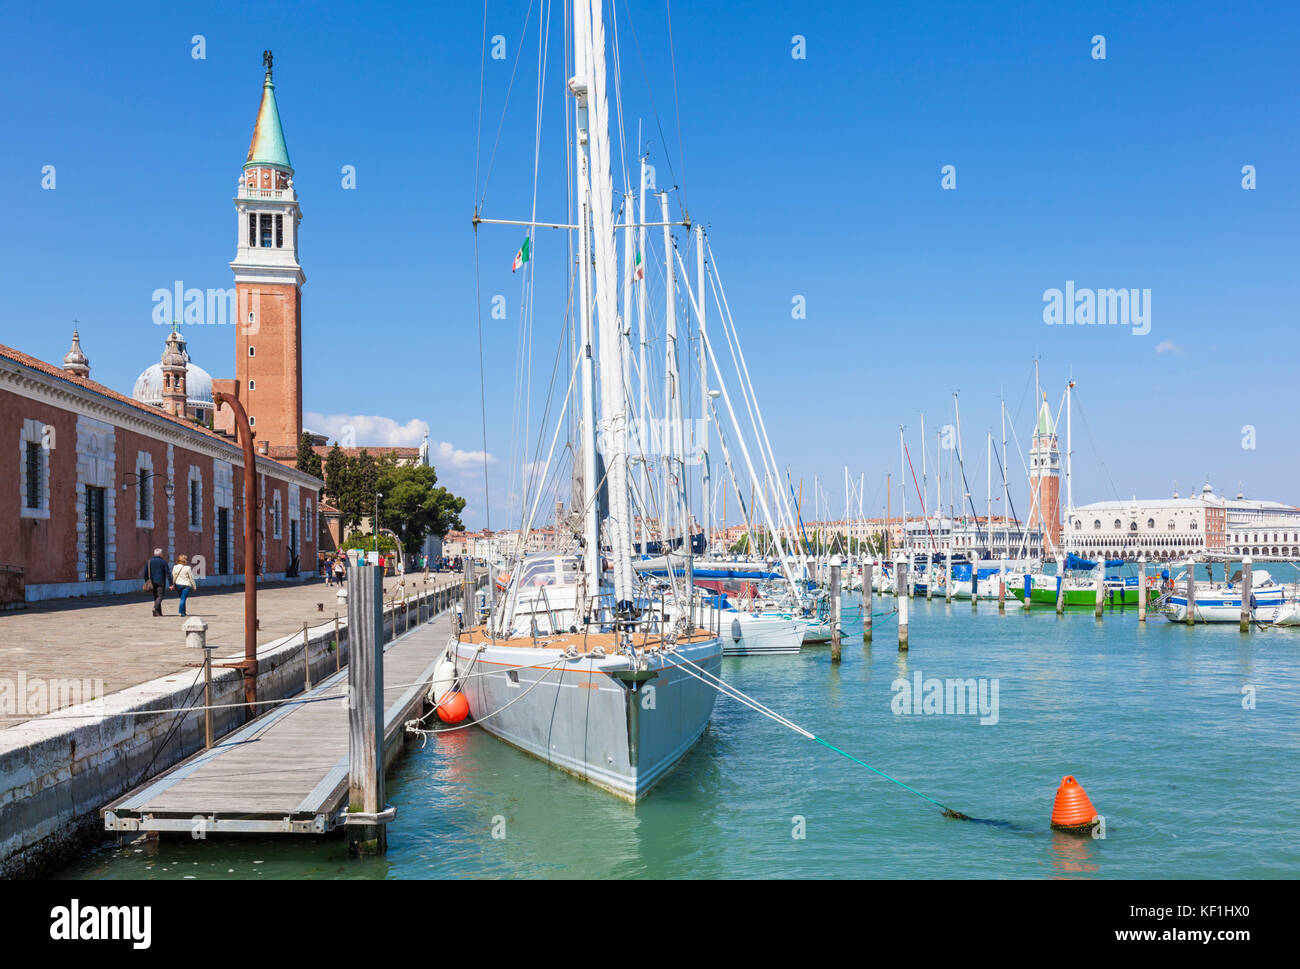 Venise ITALIE VENISE yachts amarrés dans la marina de San Giorgio Maggiore Île de San Giorgio Maggiore lagune de Venise Italie Europe de l'UE Banque D'Images